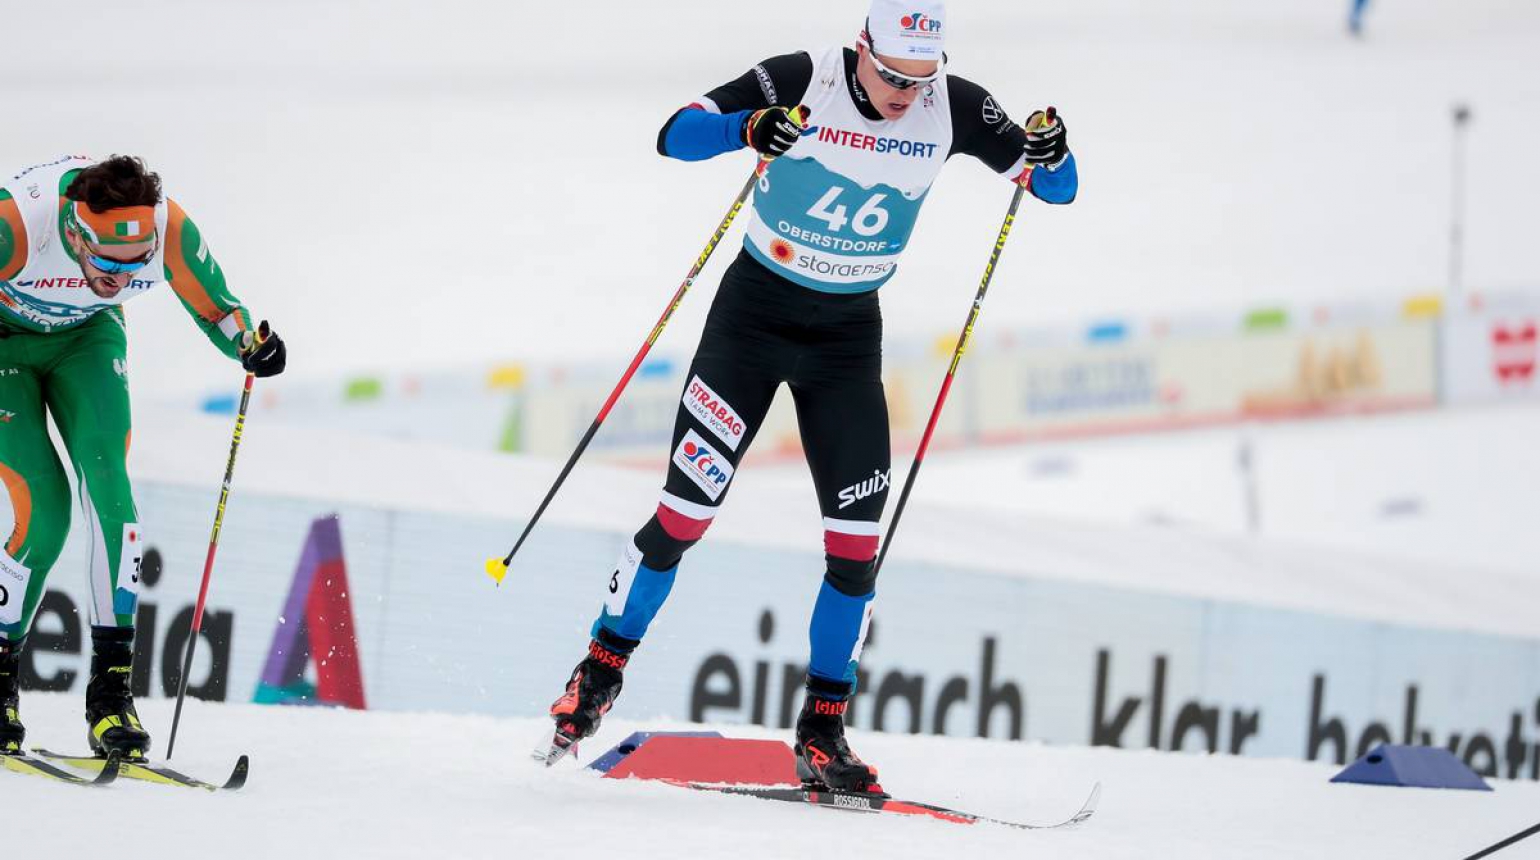 Mistrovství světa: Fellner se ve skiatlonu probojoval do nejlepší třicítky. Knop byl 37., Bešťák 53.